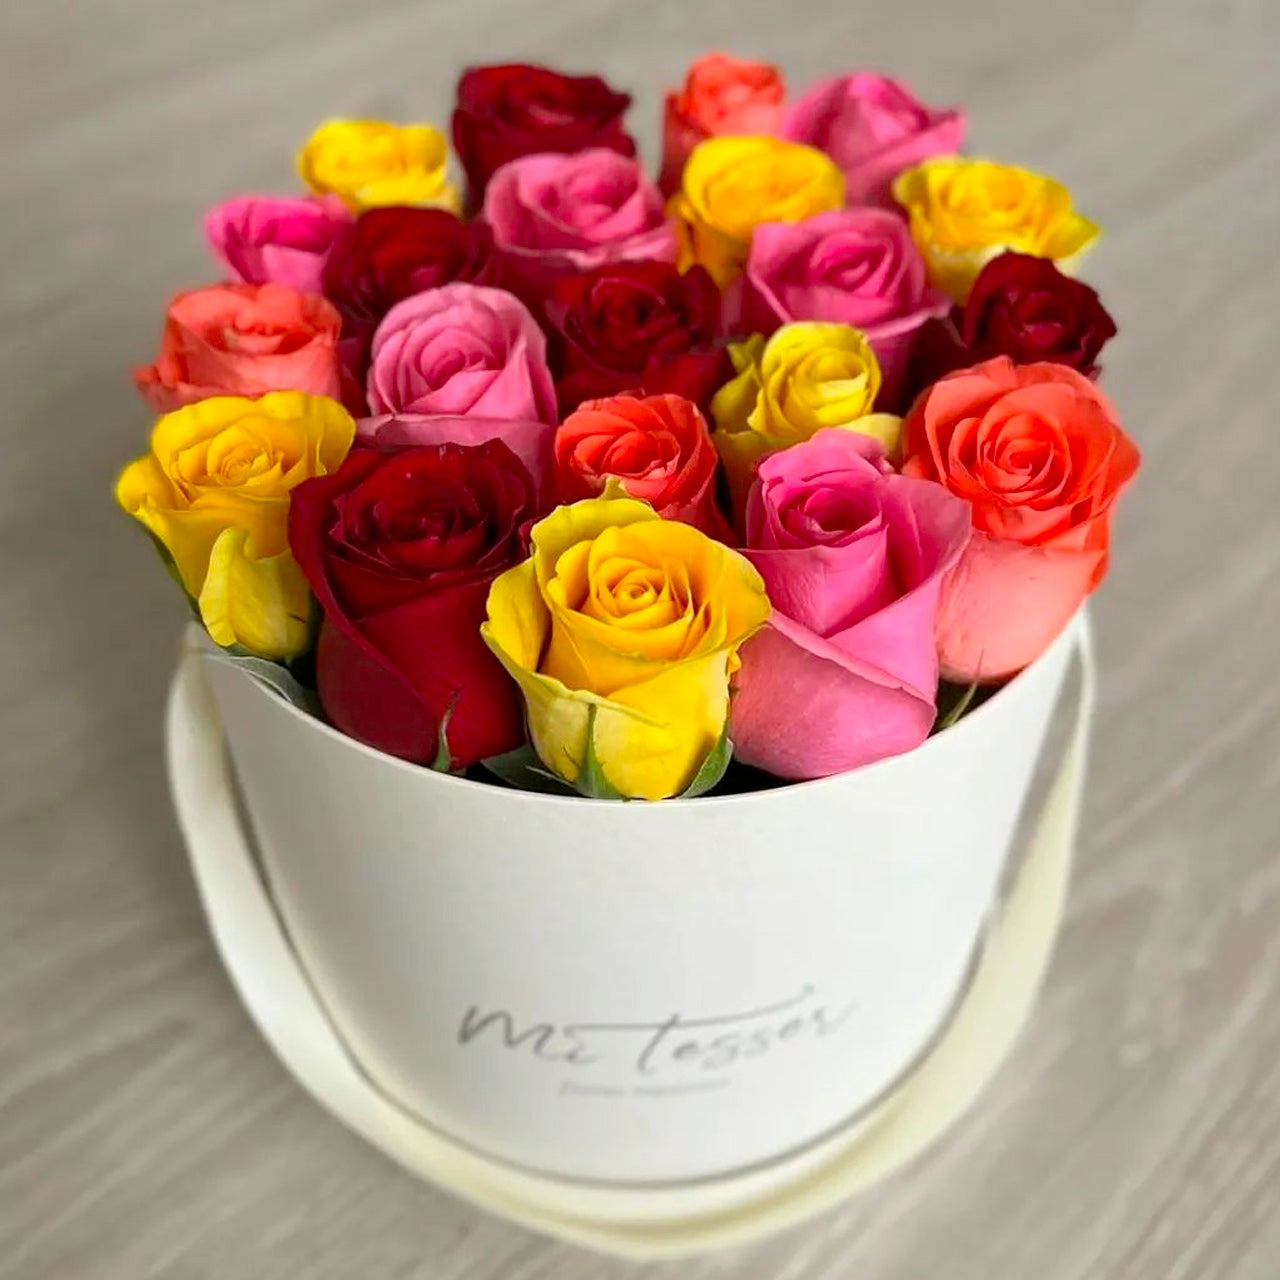 Flower-box redonda com rosas coloridas